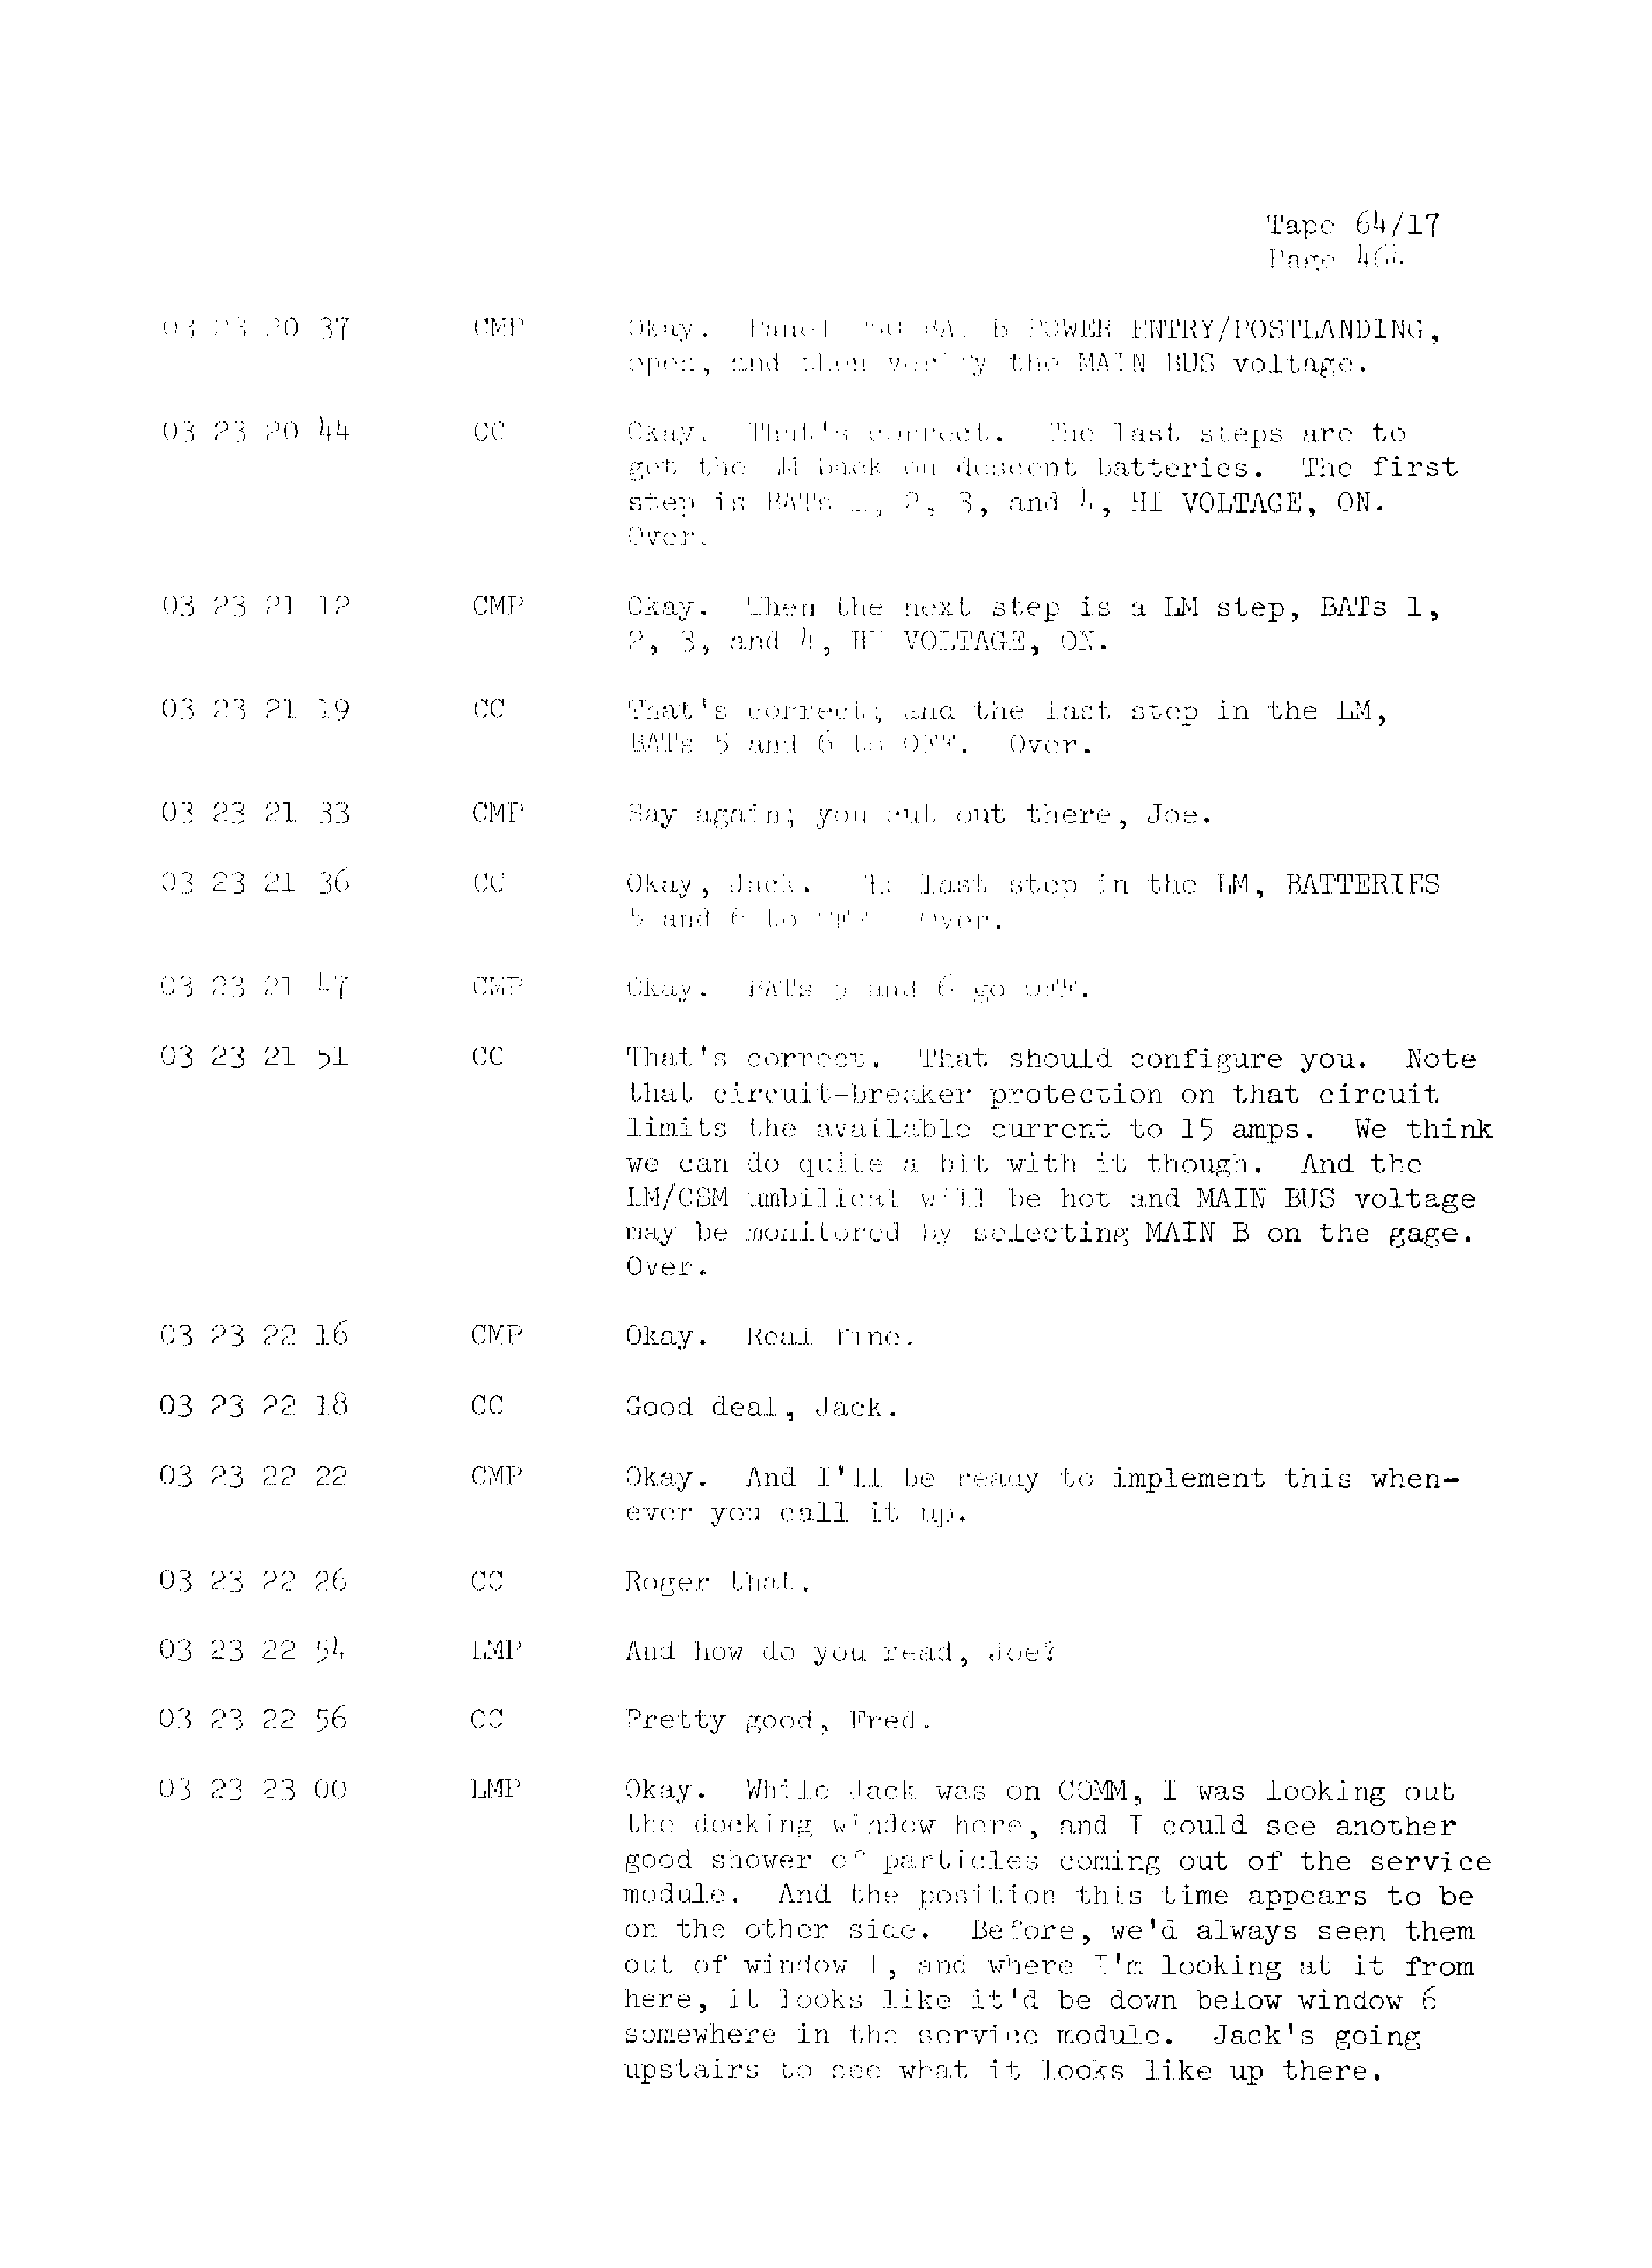 Page 471 of Apollo 13’s original transcript